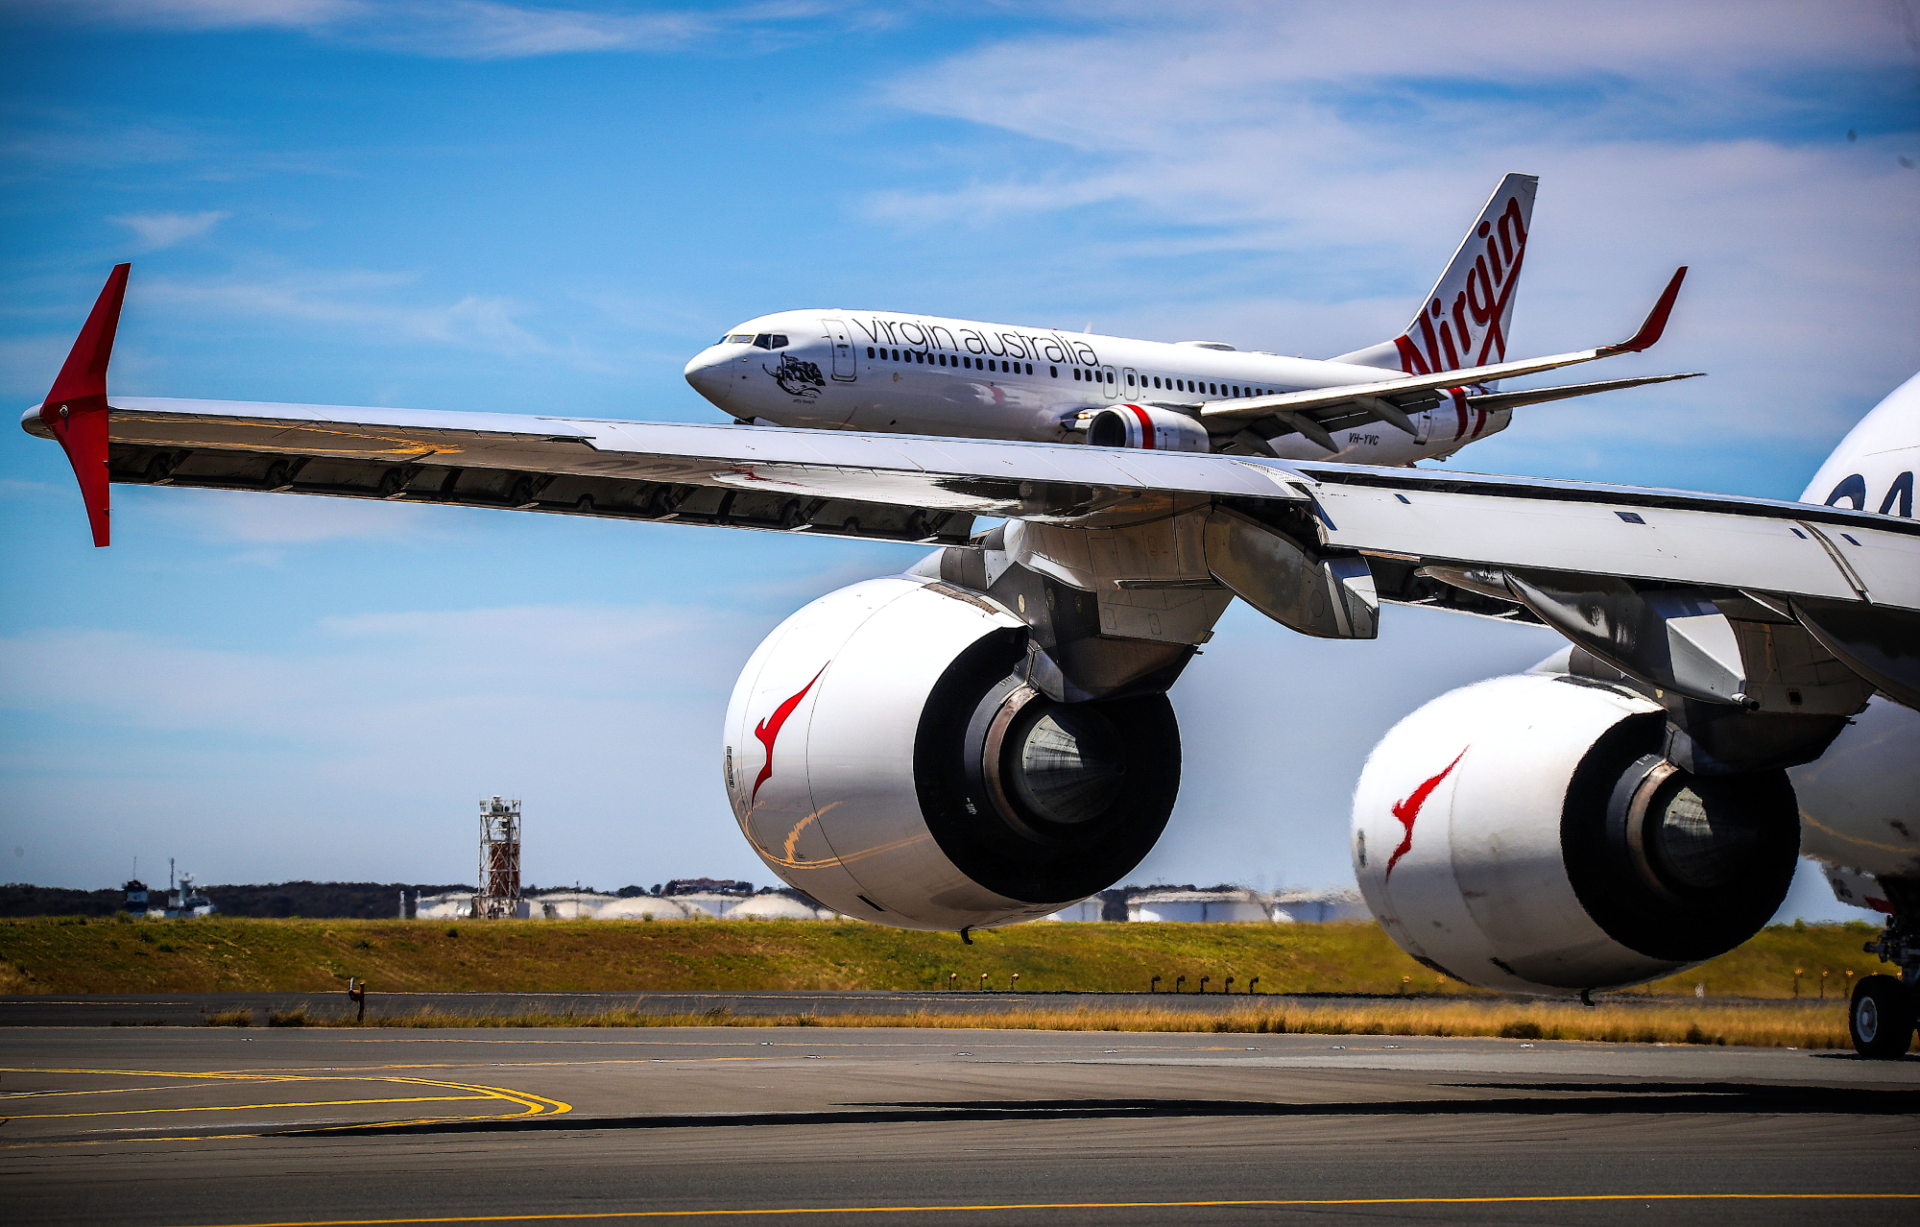 Qantas Virgin Australia aircraft at airport